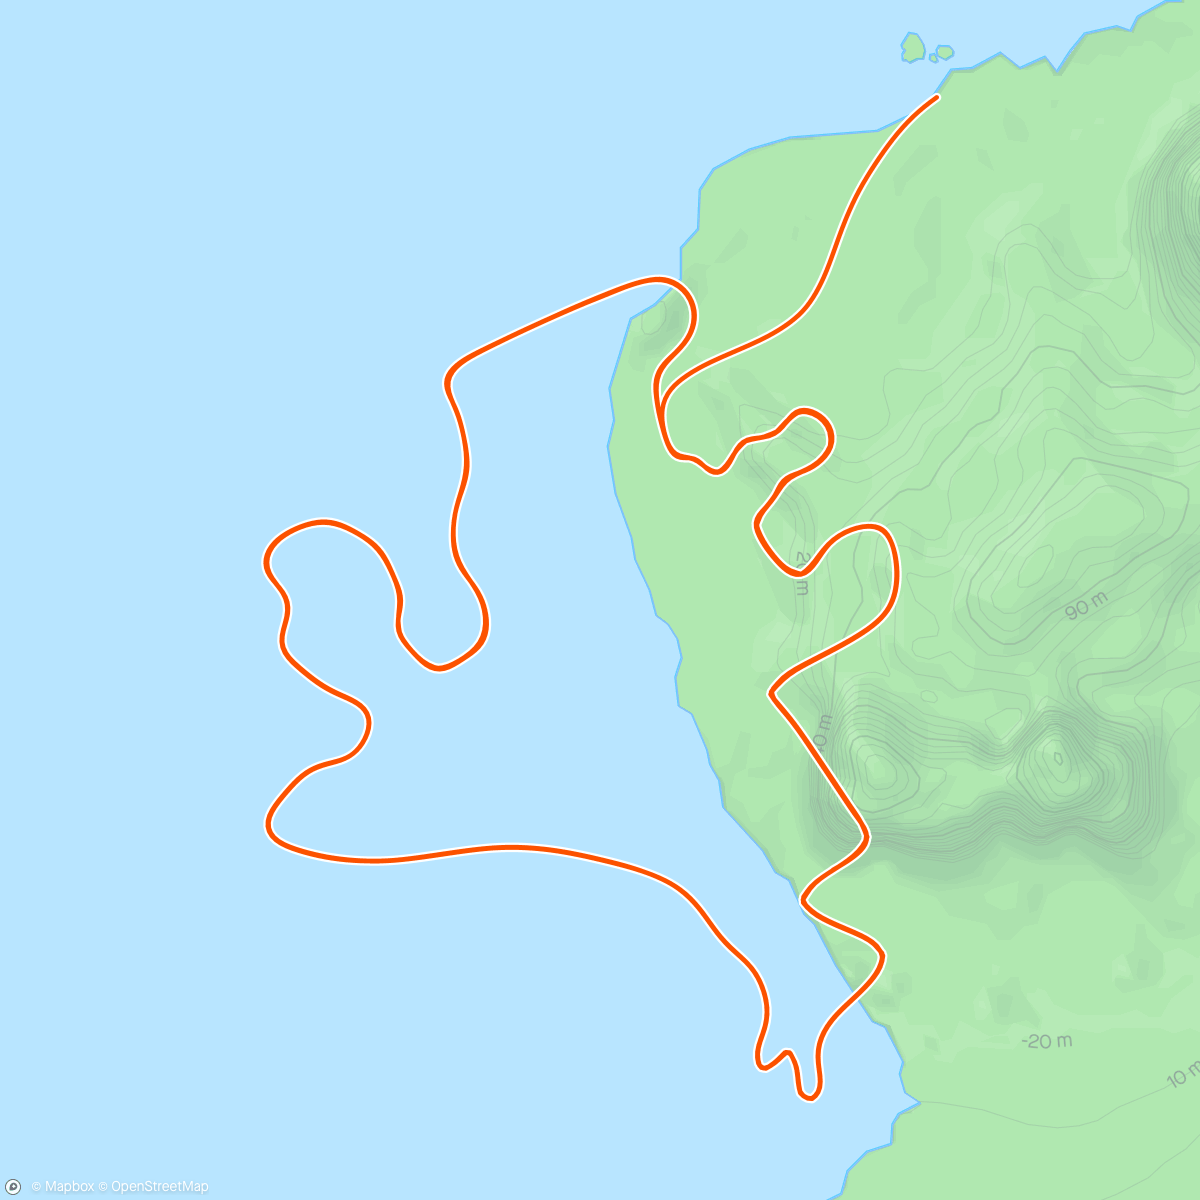 アクティビティ「Zwift - Race: Stage 3: Lap It Up - Seaside Sprint (C) on Seaside Sprint in Watopia」の地図